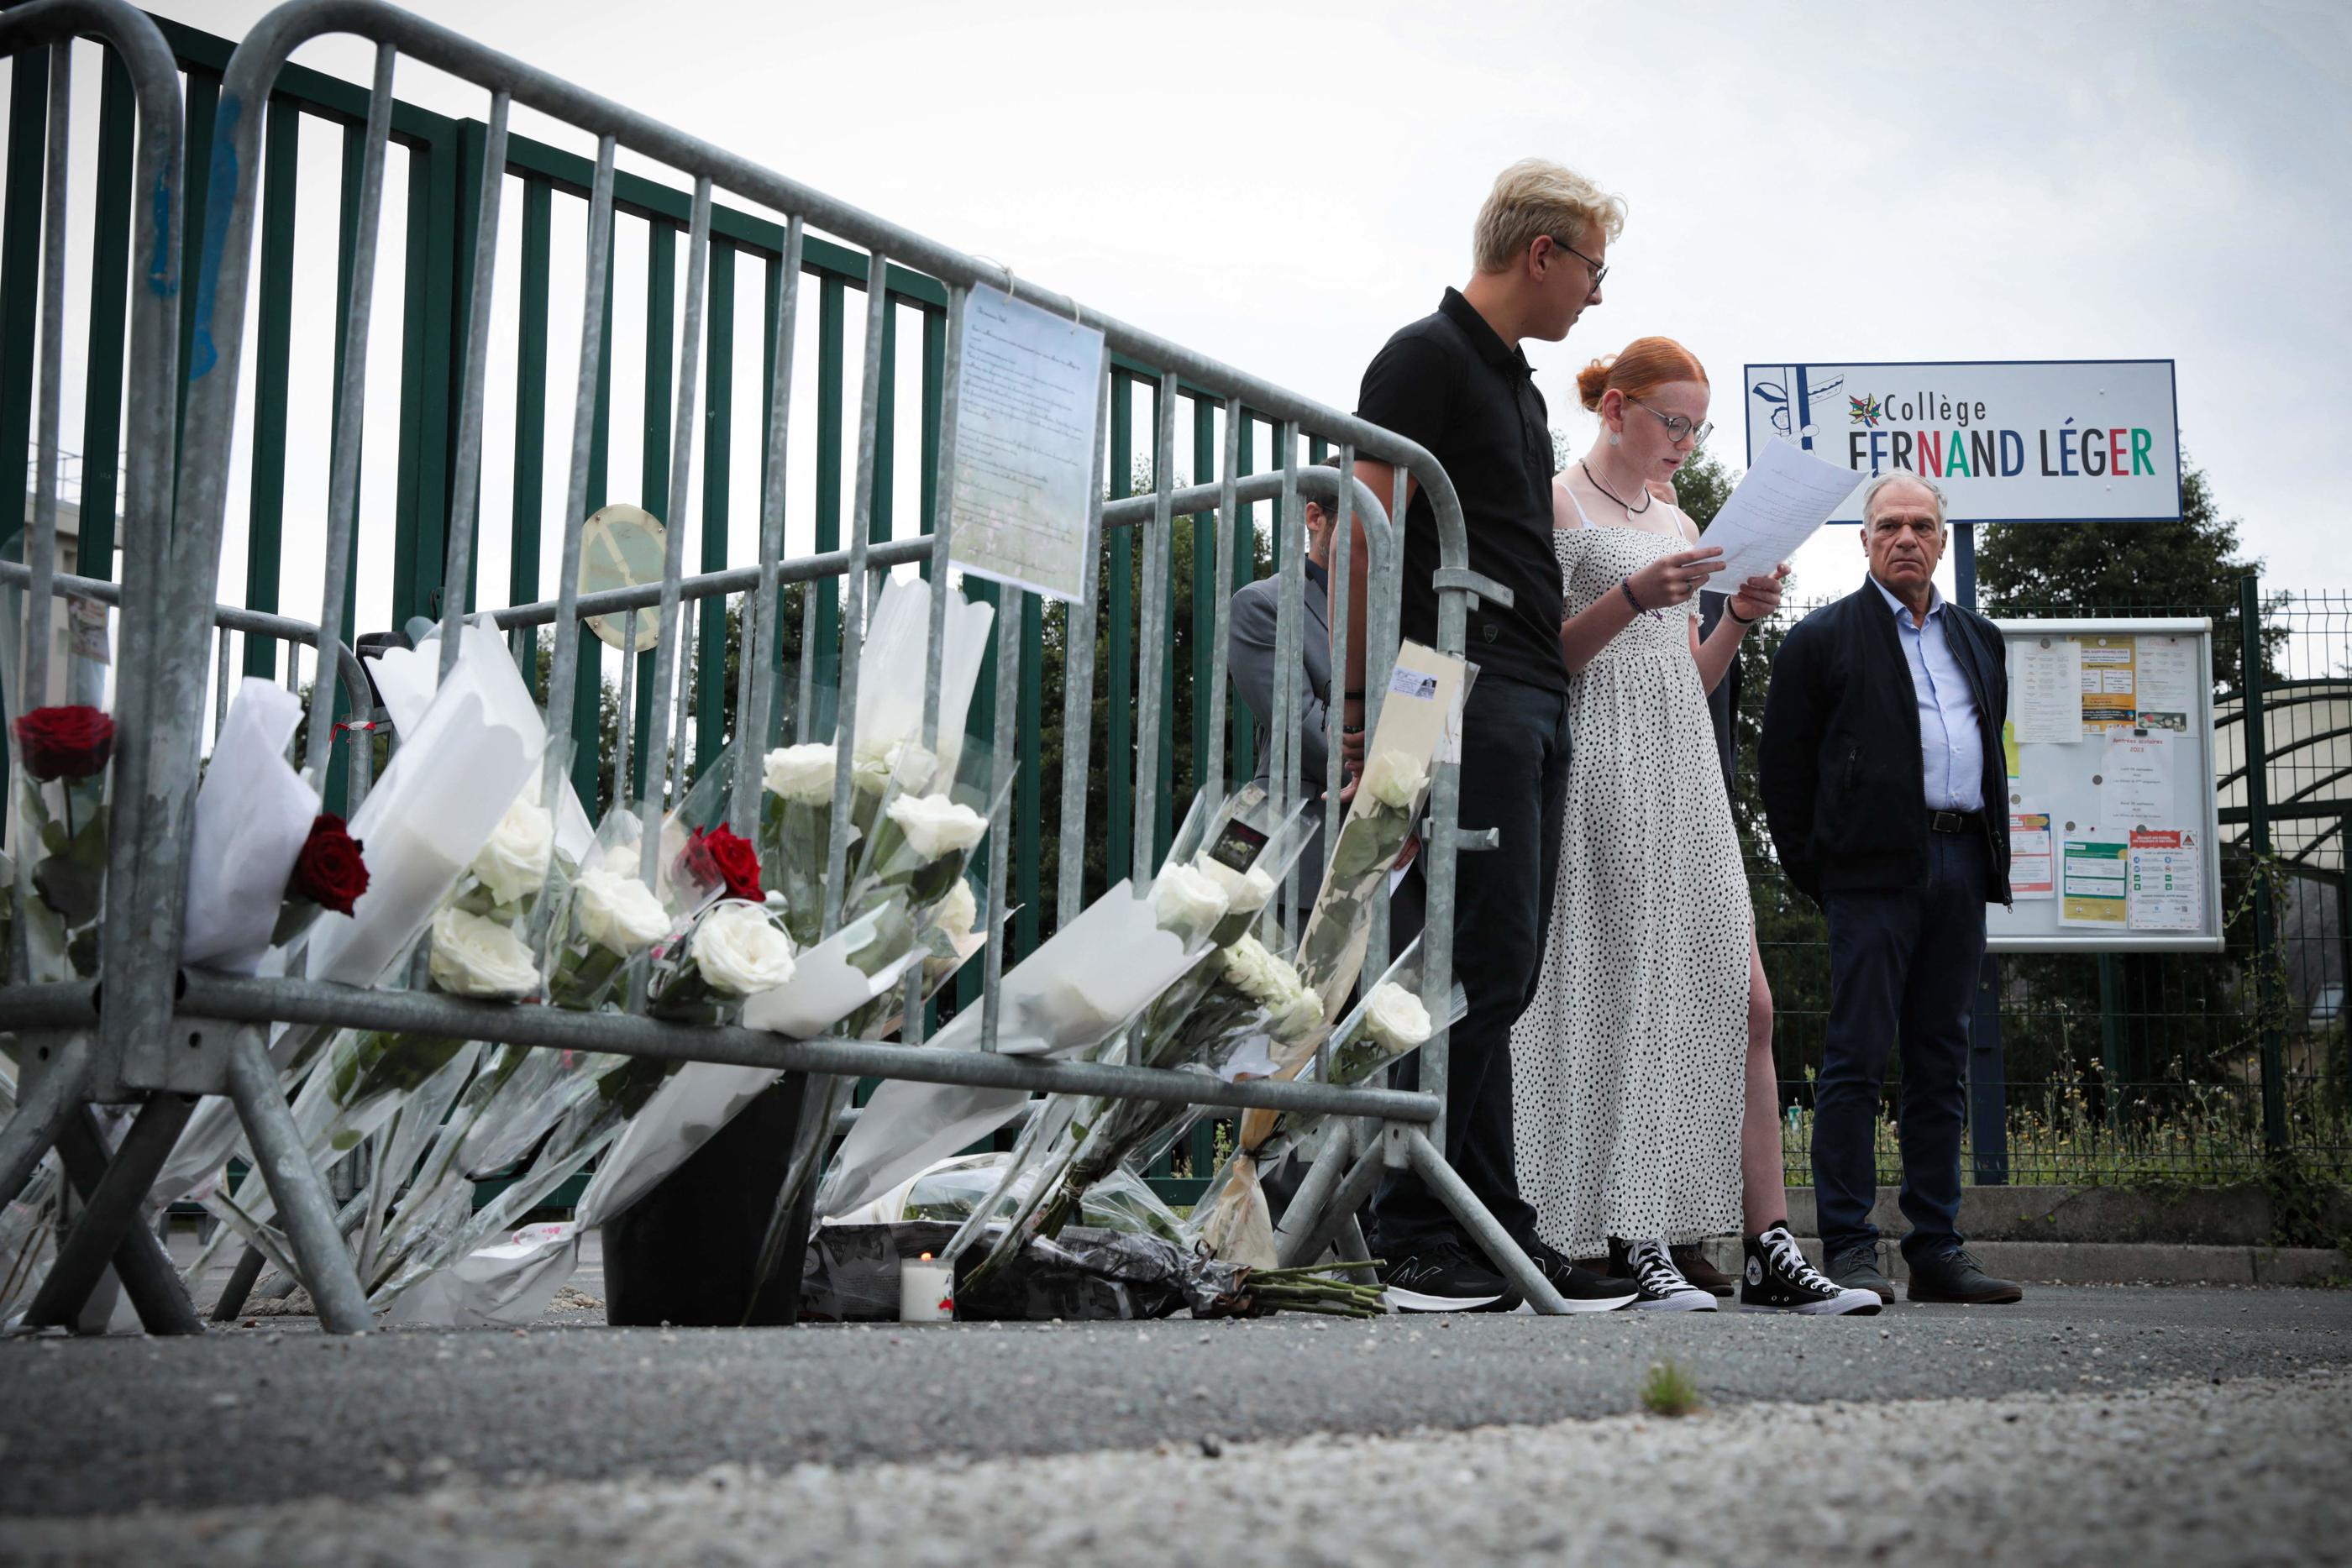 Des élèves du principal du collège retrouvé mort à Lisieux se sont retrouvés ce mardi, pour lui rendre hommage. LOU BENOIST/AFP